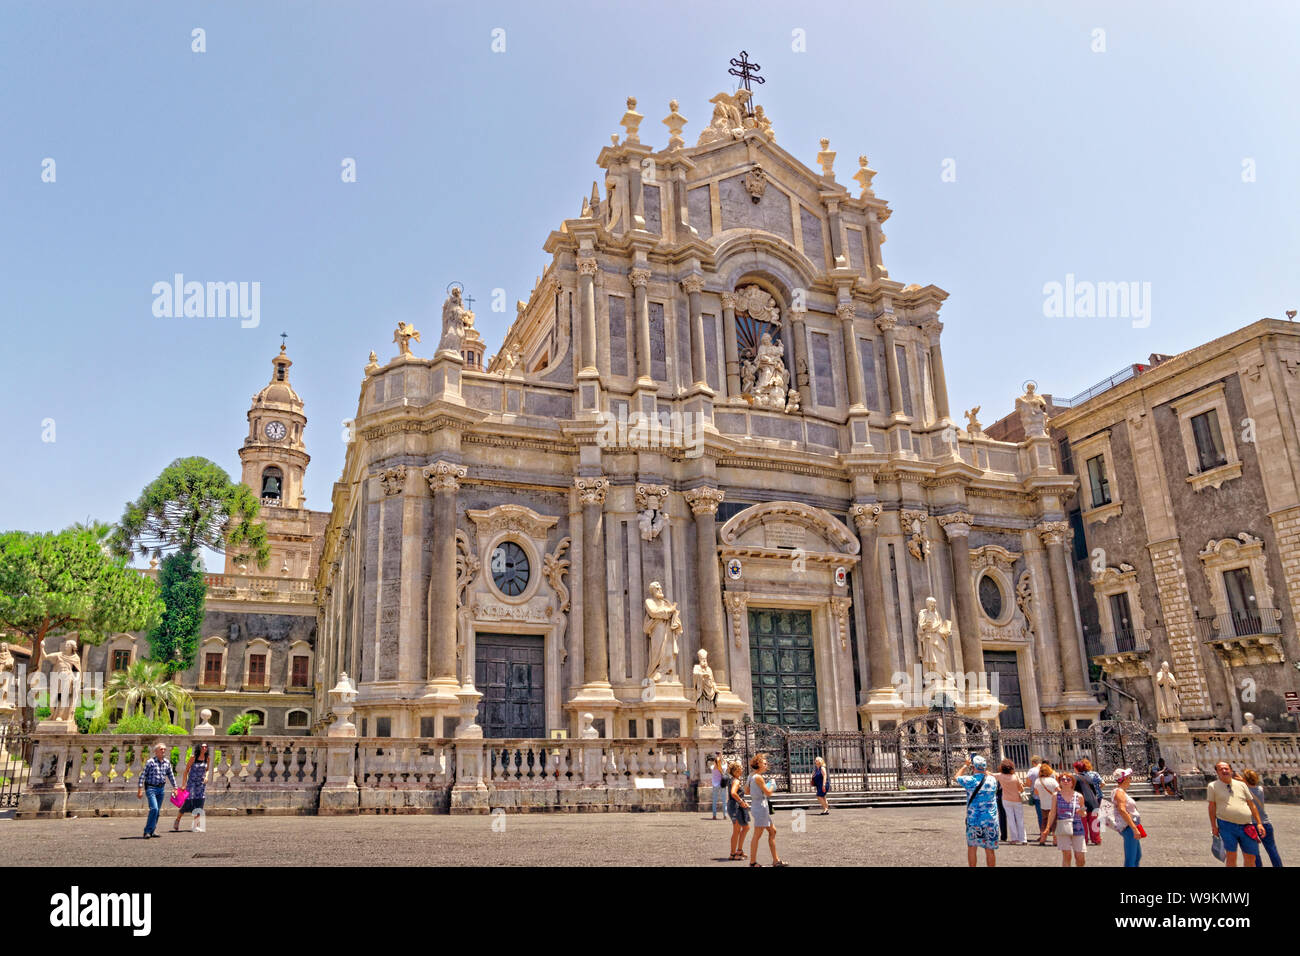 La Cathédrale Sainte Agathe dans la place du Duomo, Catane, Sicile. Banque D'Images